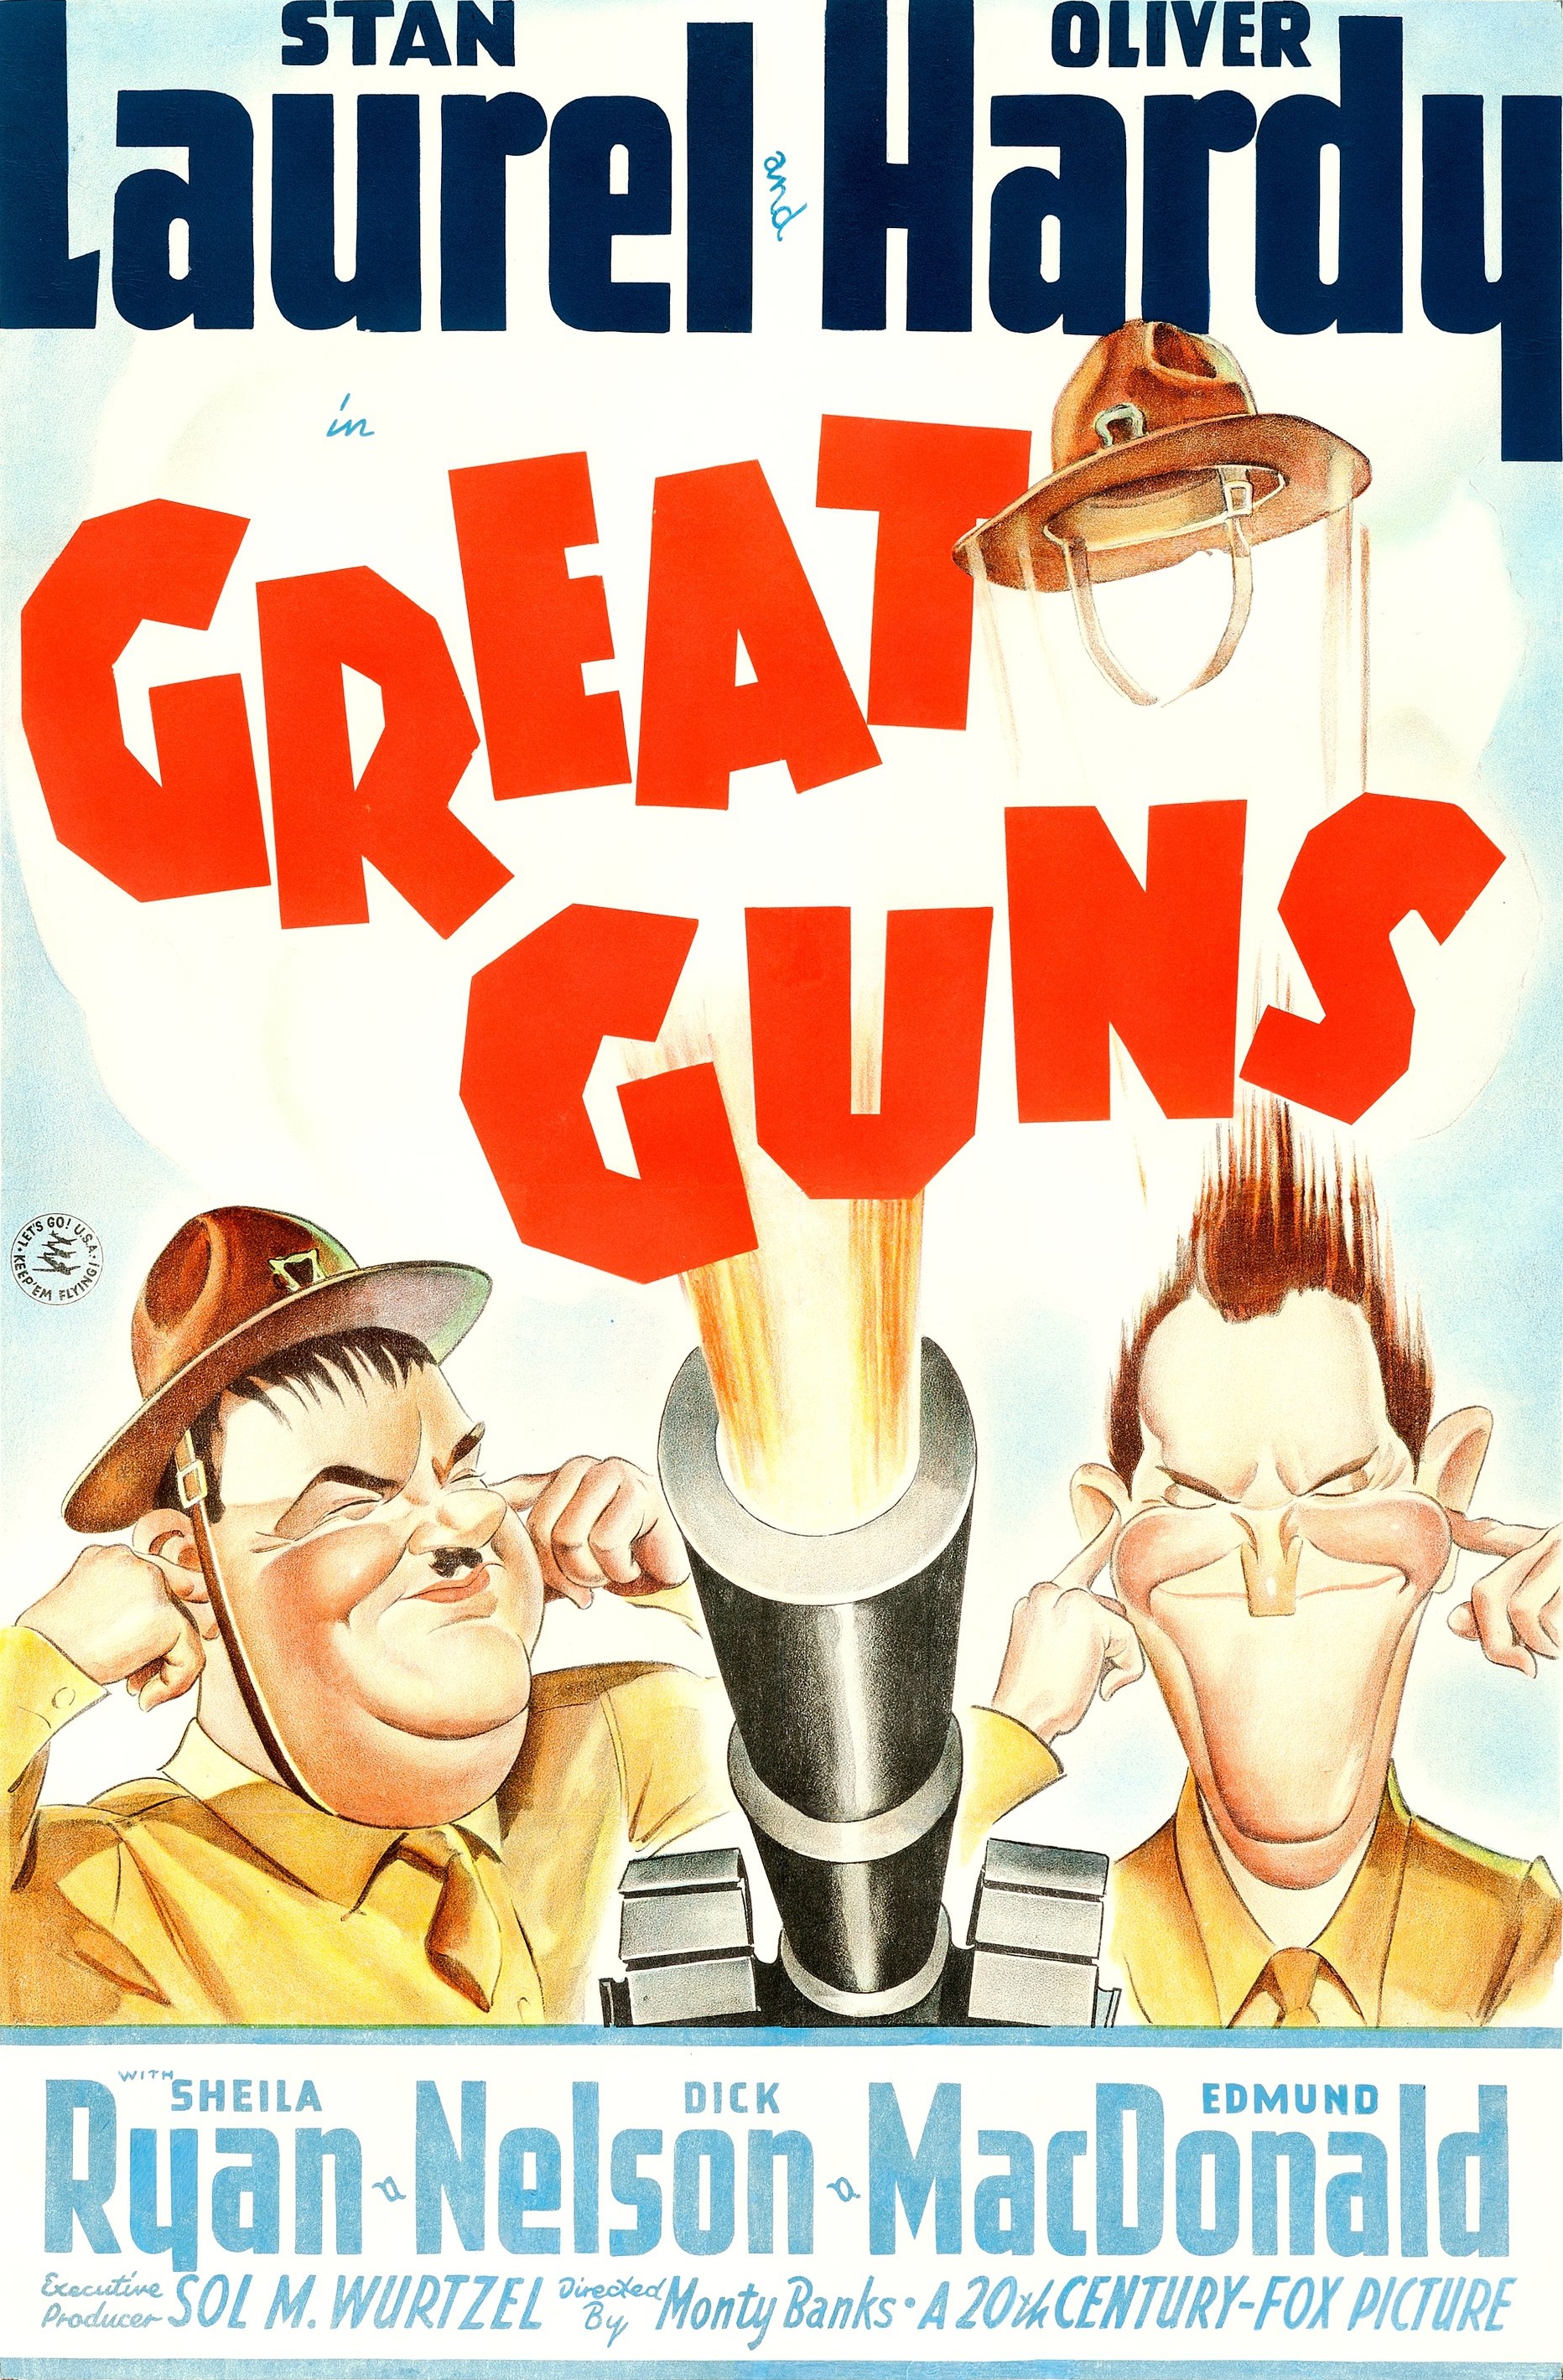 Great Guns